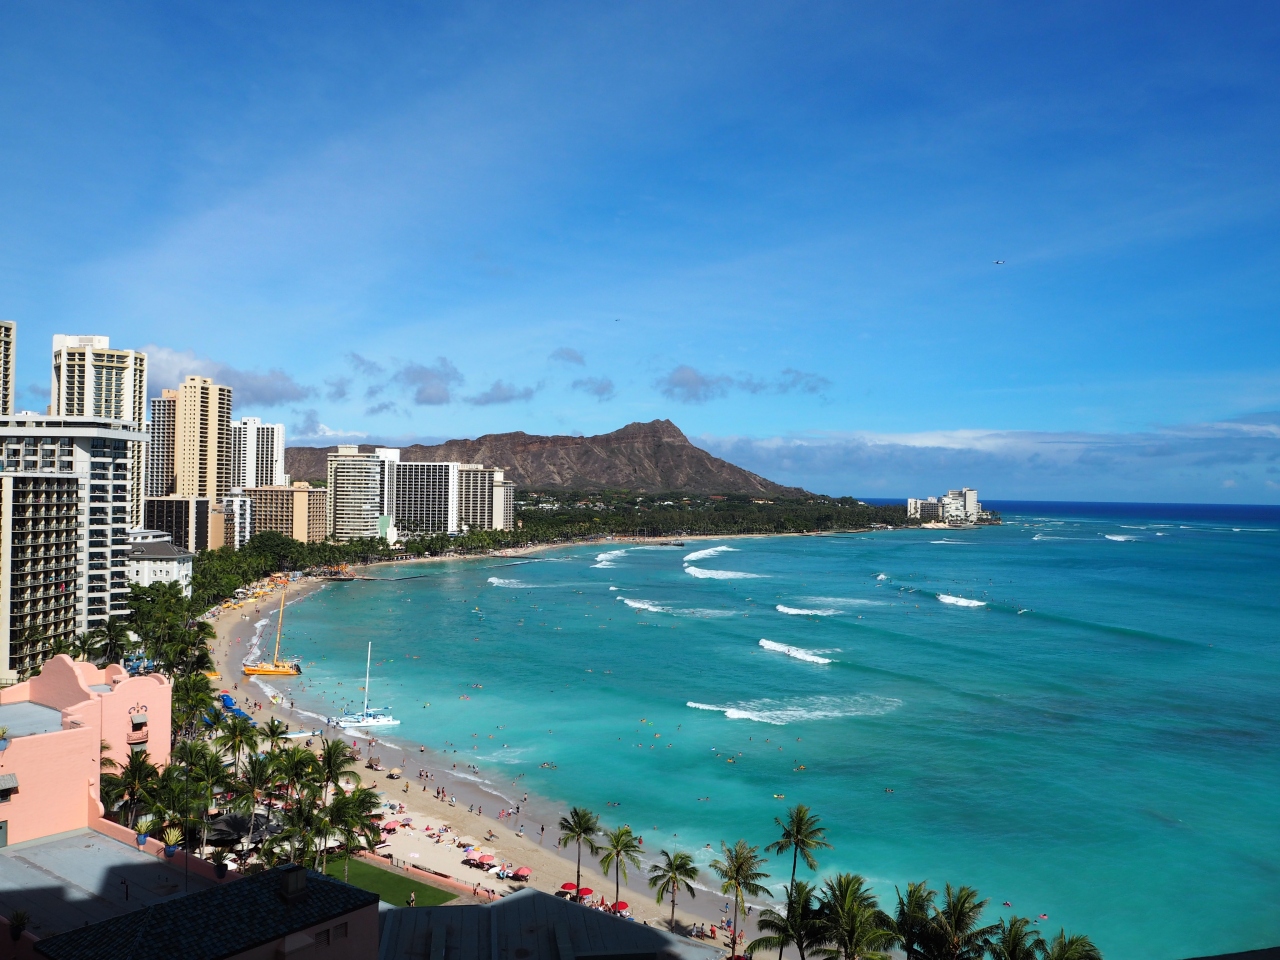 人気ダウンロード ハワイ 景色 画像 あなたに最適な公開画像